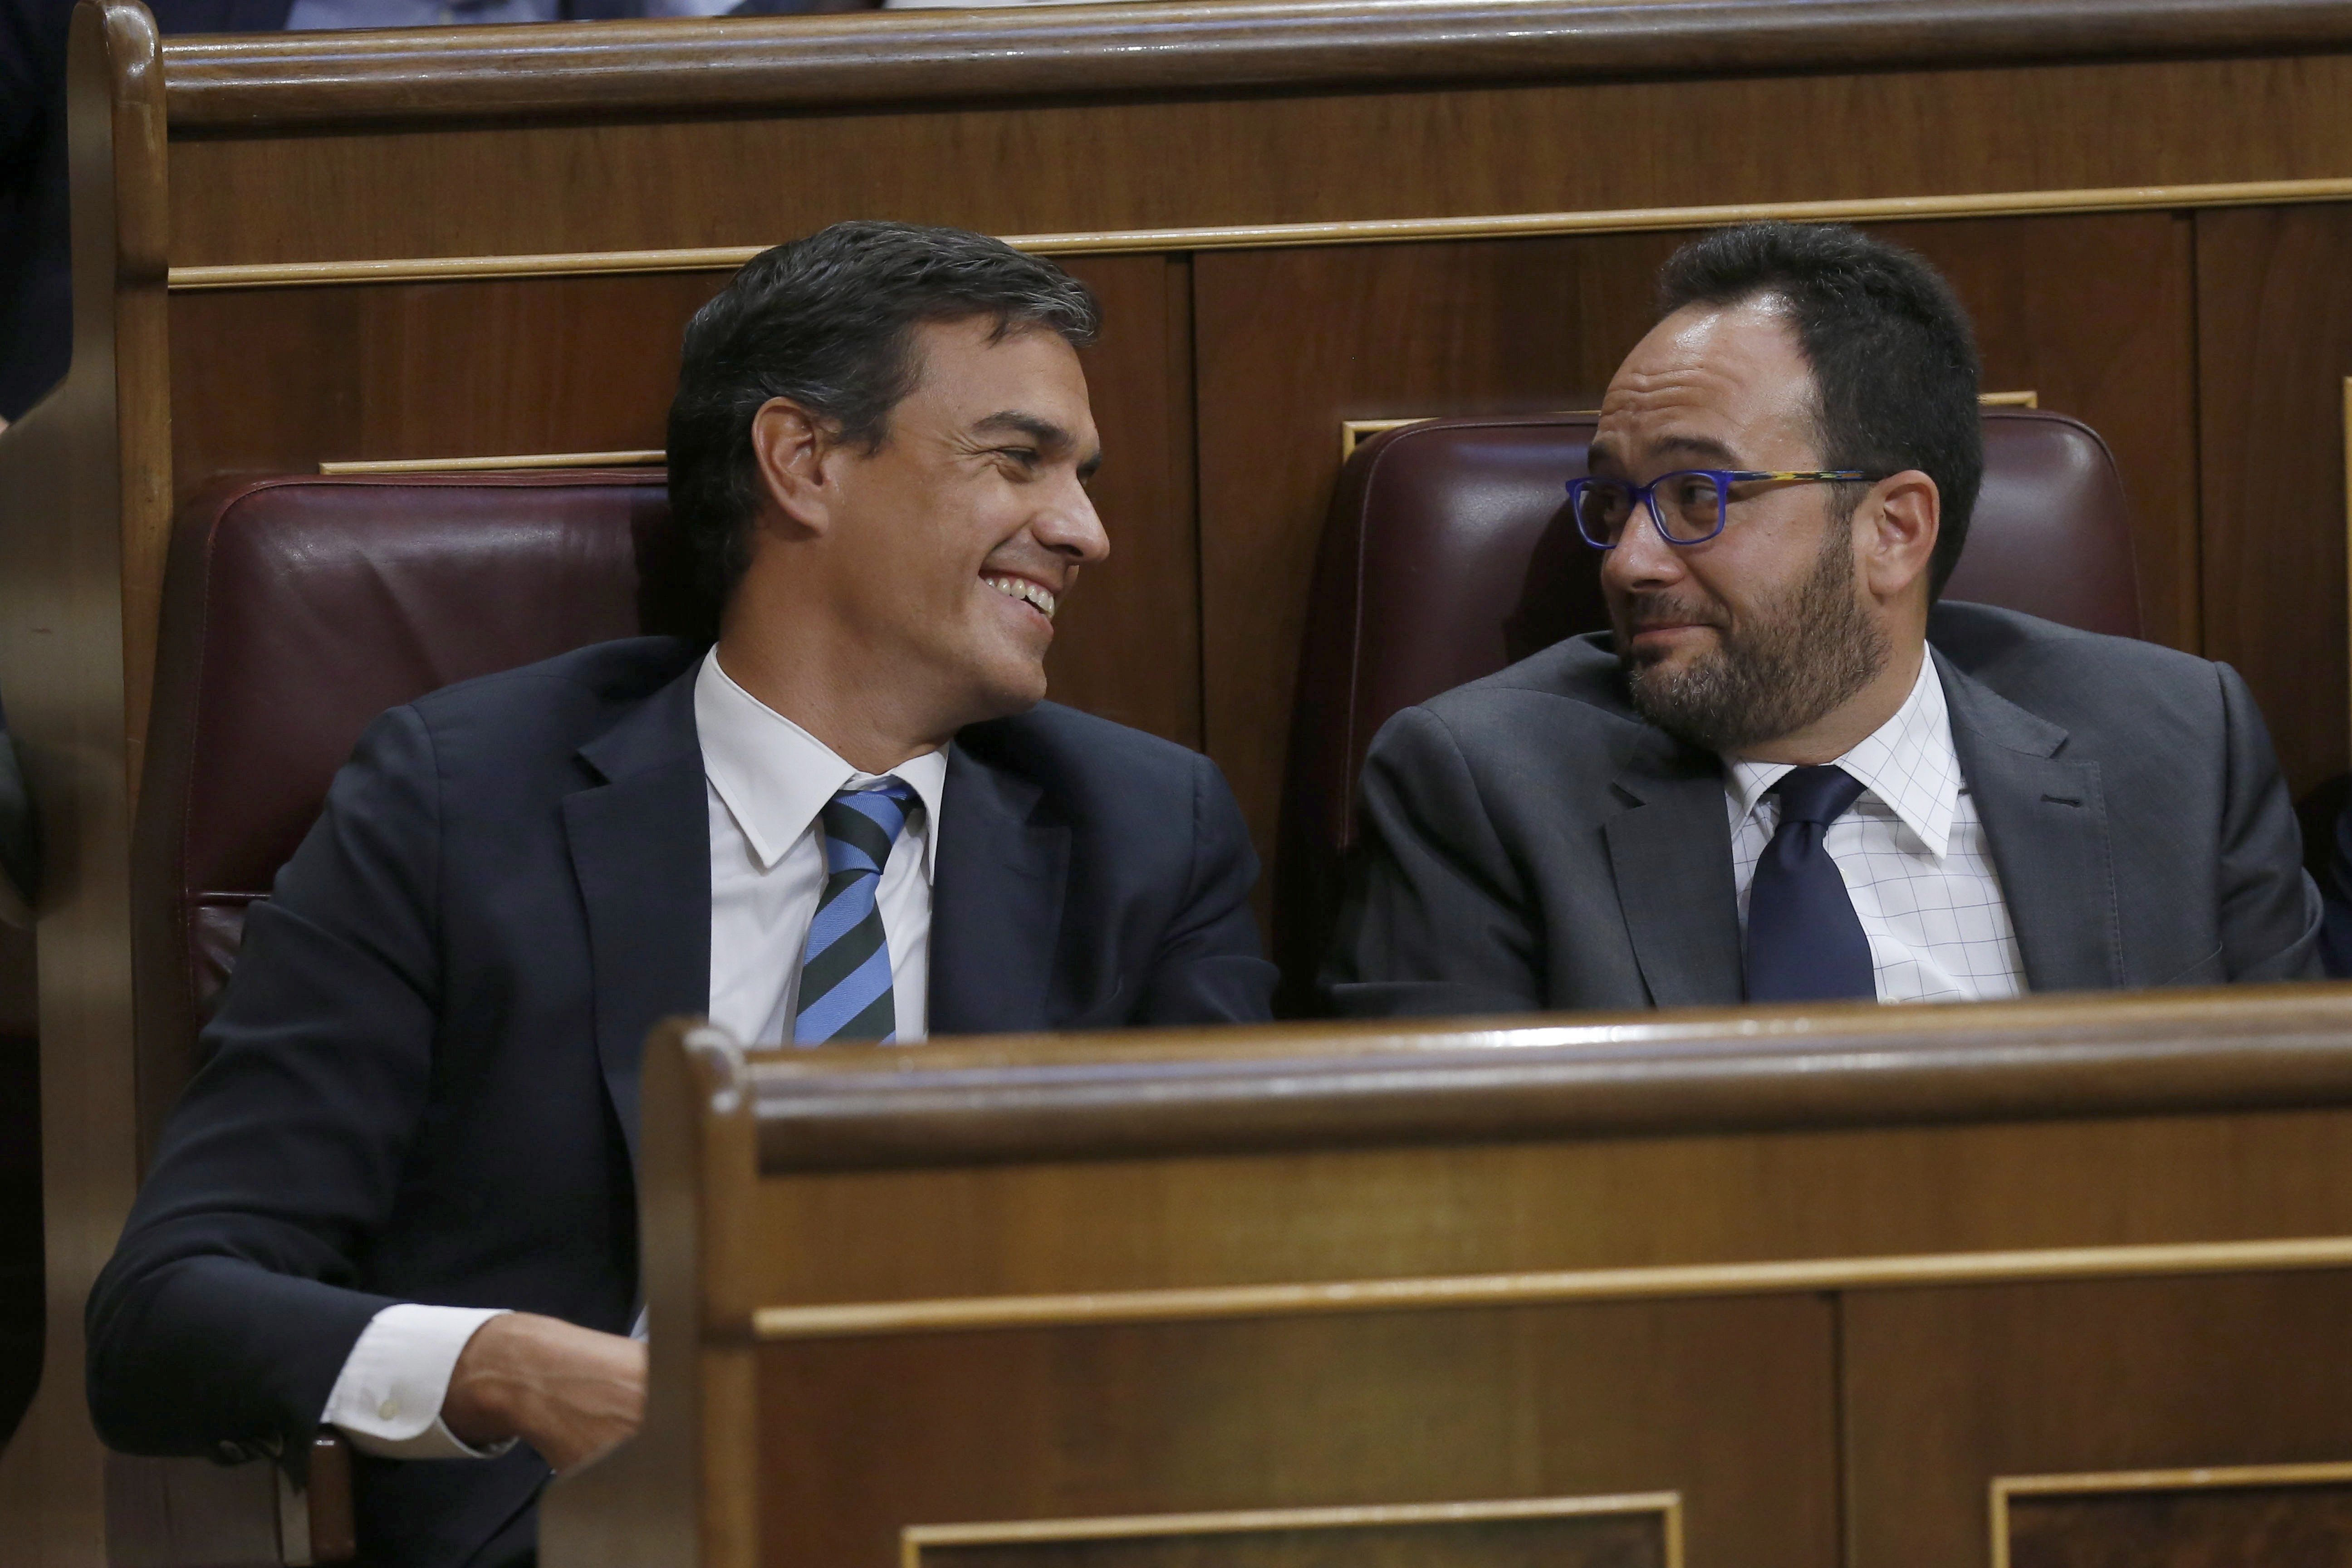 El discurso de Rajoy no convence ni a C's